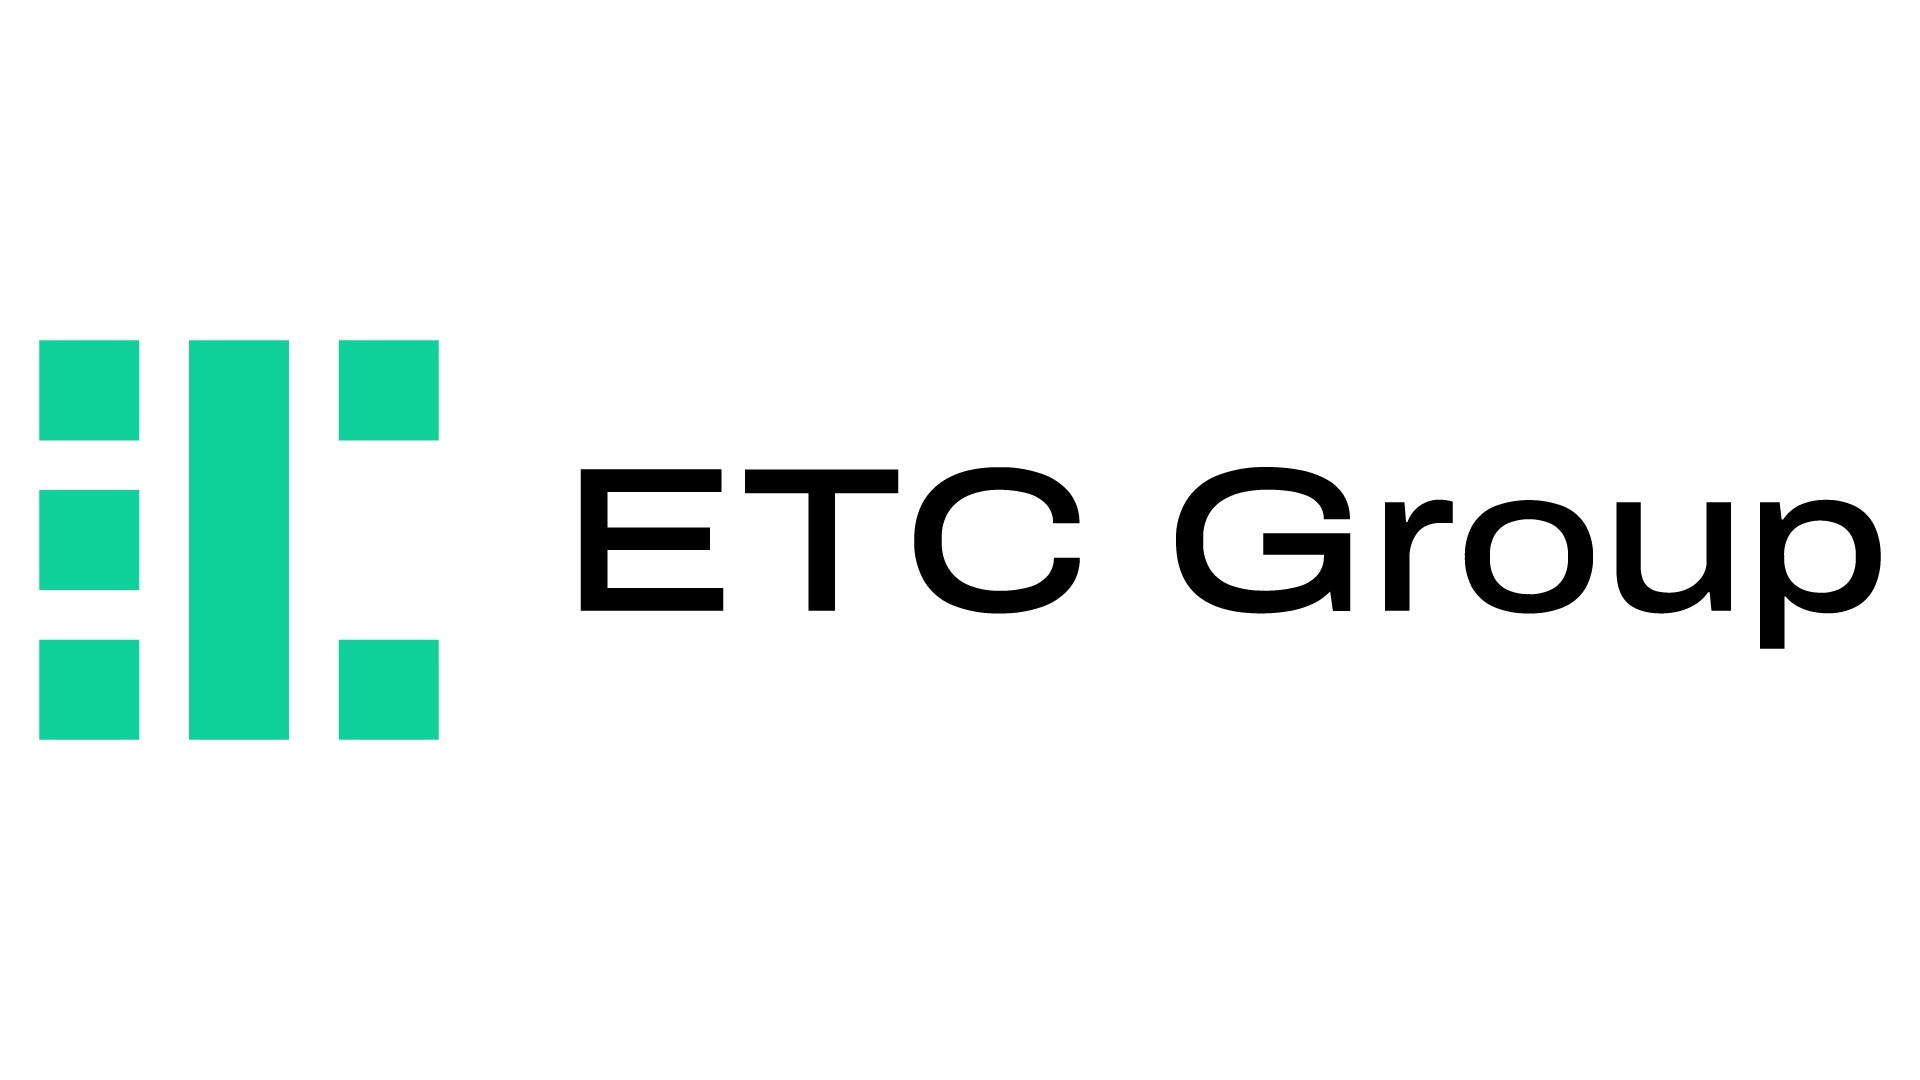 ETC Group meddelar att de stänger fyra kryptoprodukter efter låg efterfrågan. Det är bolagets börshandlade produkter (ETP) för bitcoin cash, stellar, tezos och uniswap som kommer att stängas.